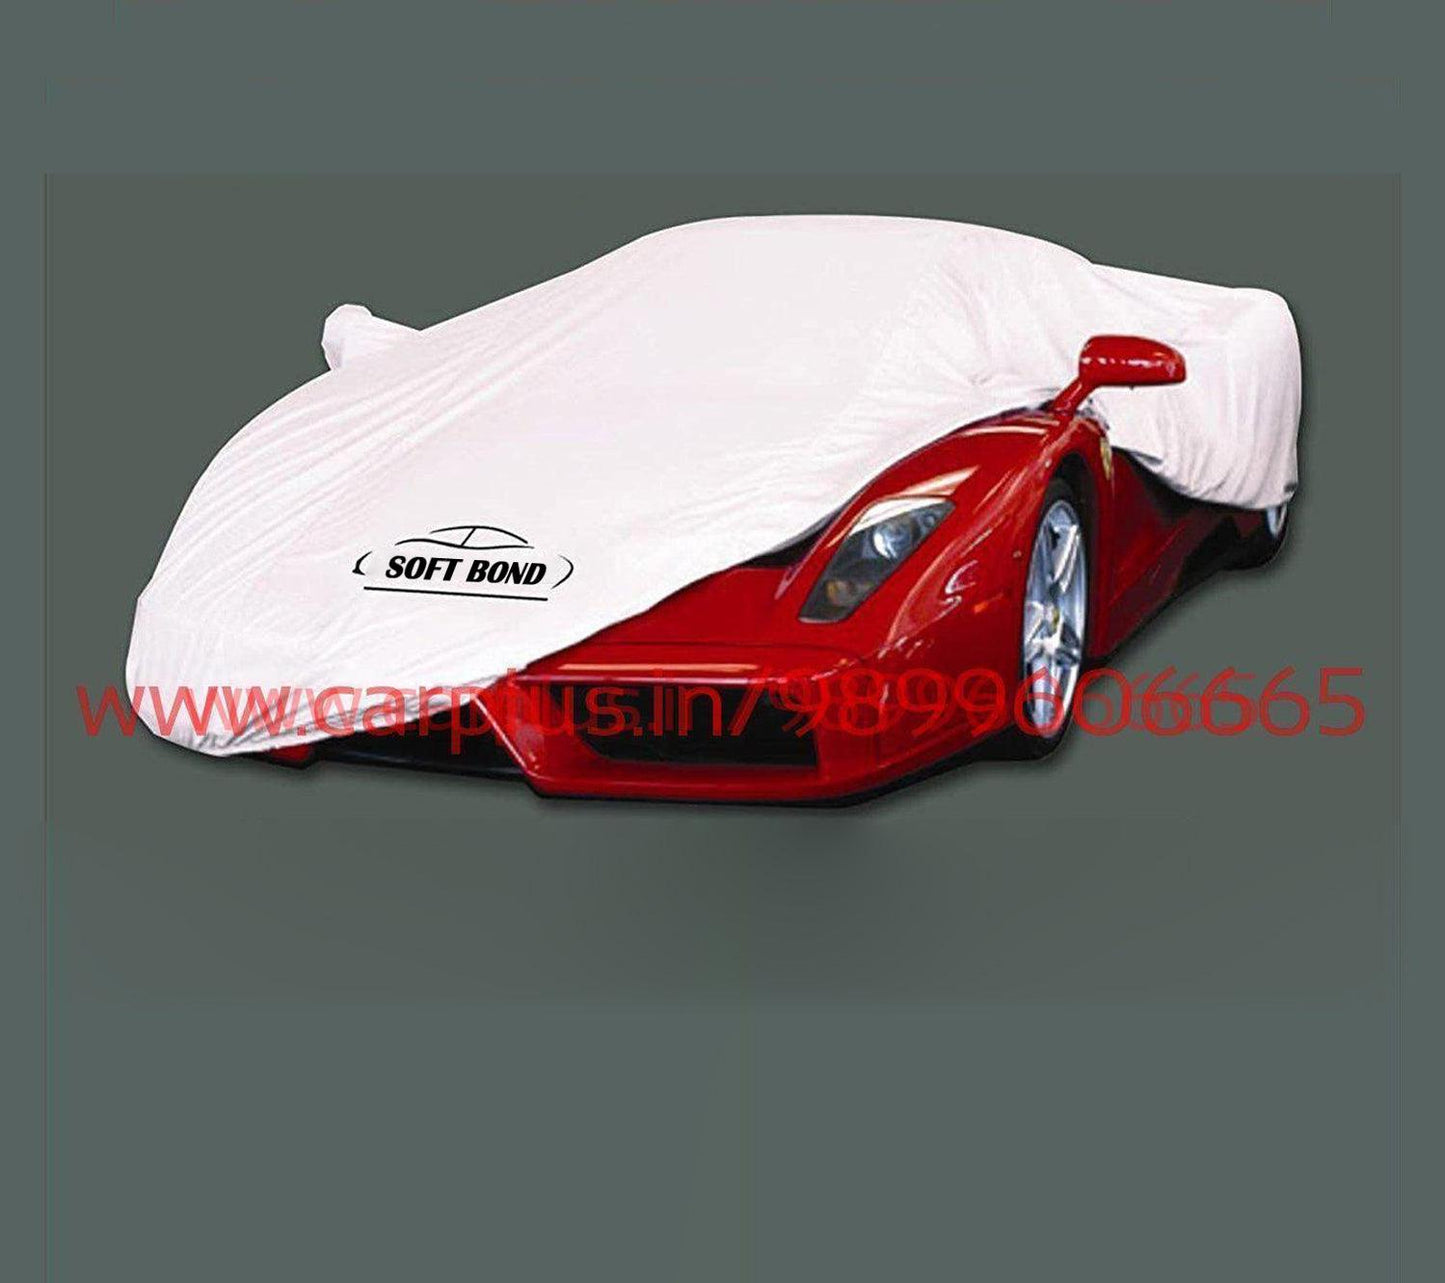 
                  
                    Soft Bond Body Cover for Audi A3(Navy Blue)-Body Cover-SOFT BOND-CARPLUS
                  
                